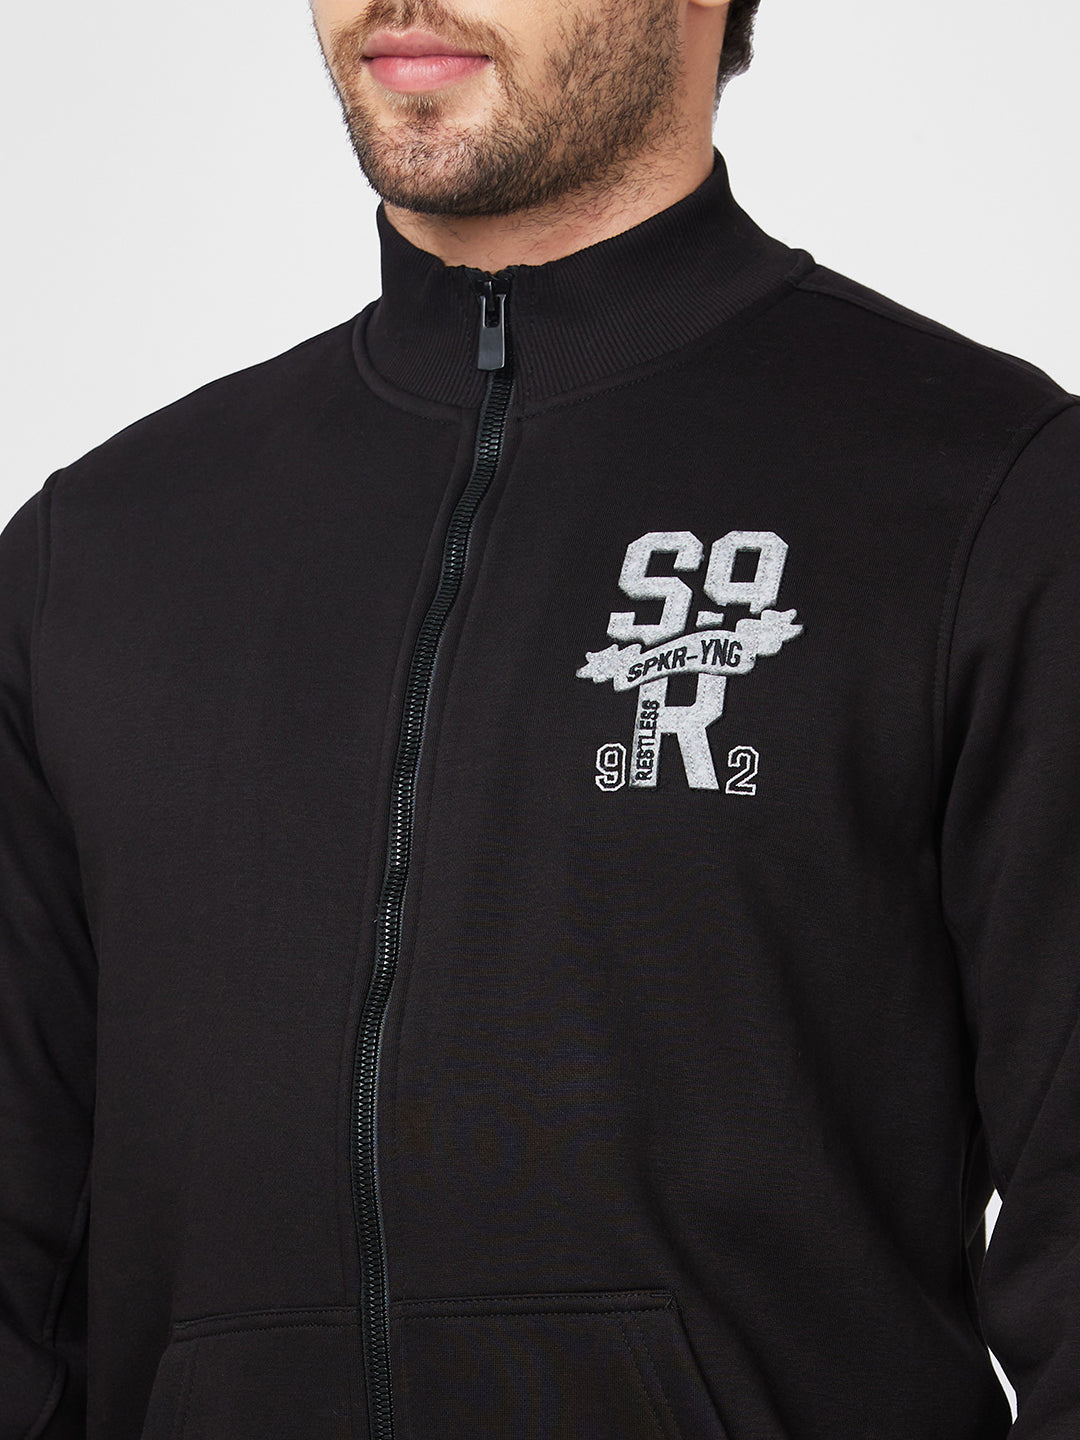 Spykar High Neck Full Sleeve Black Sweatshirt For Men